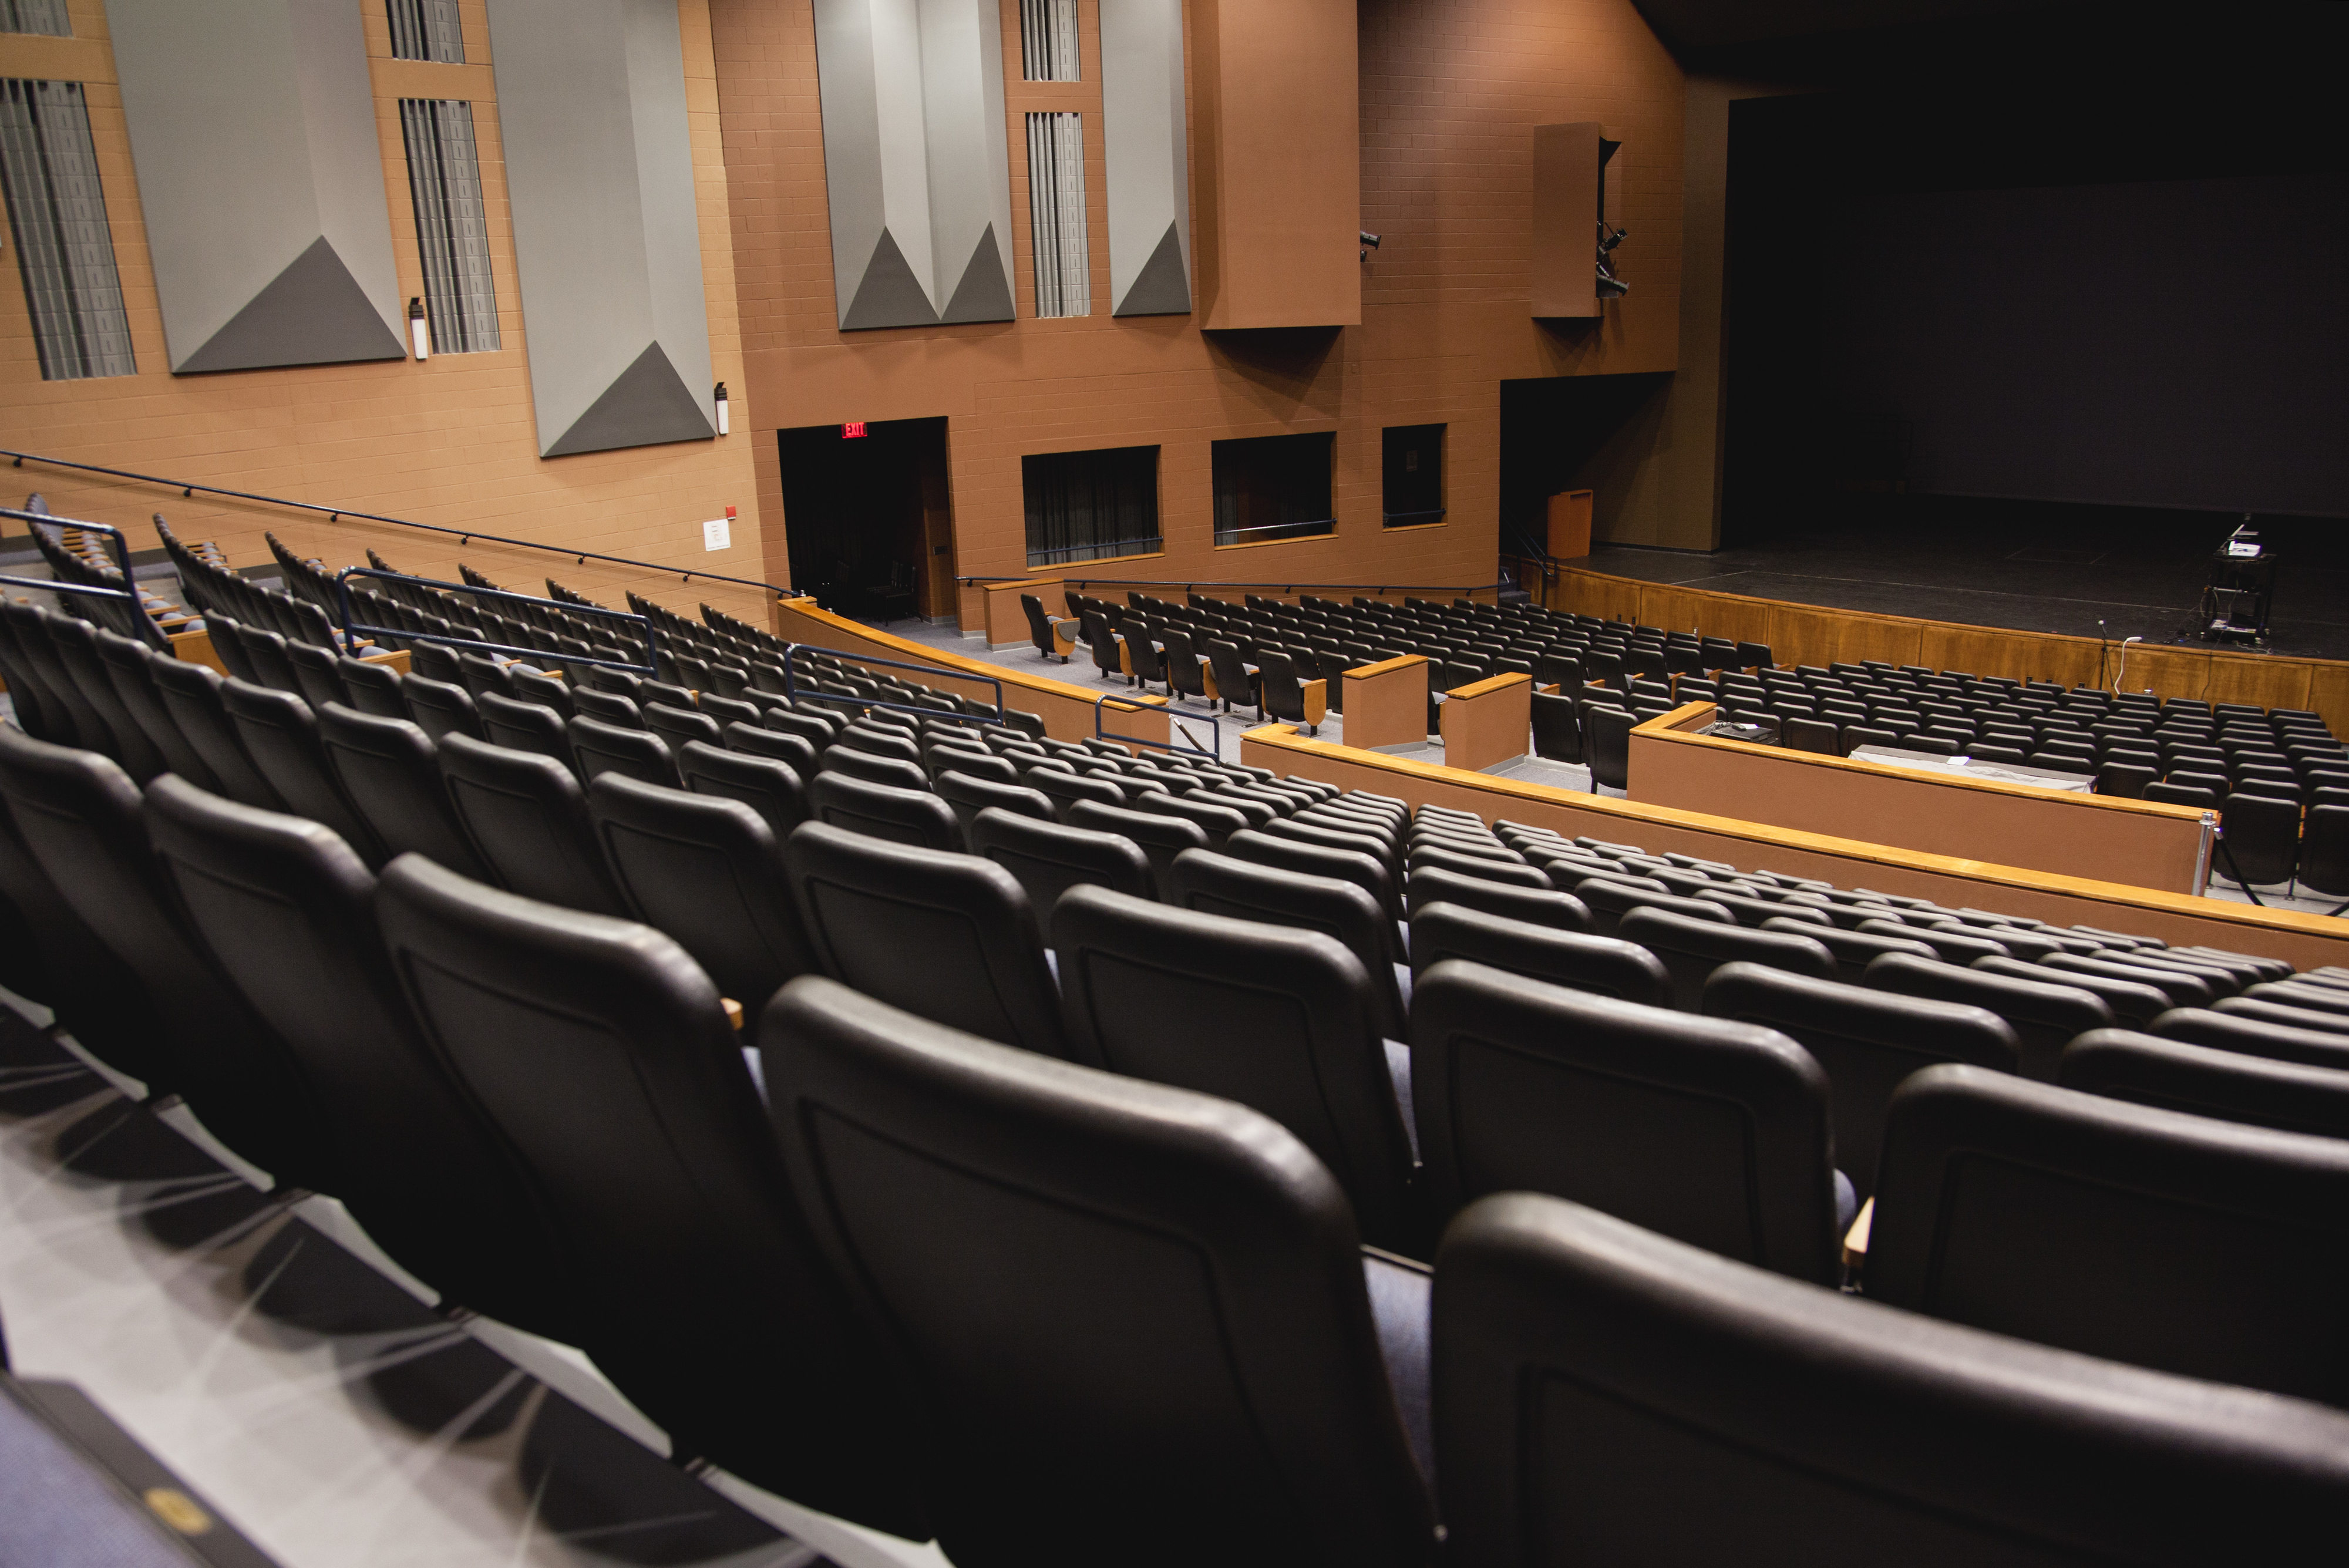 An empty class auditorium